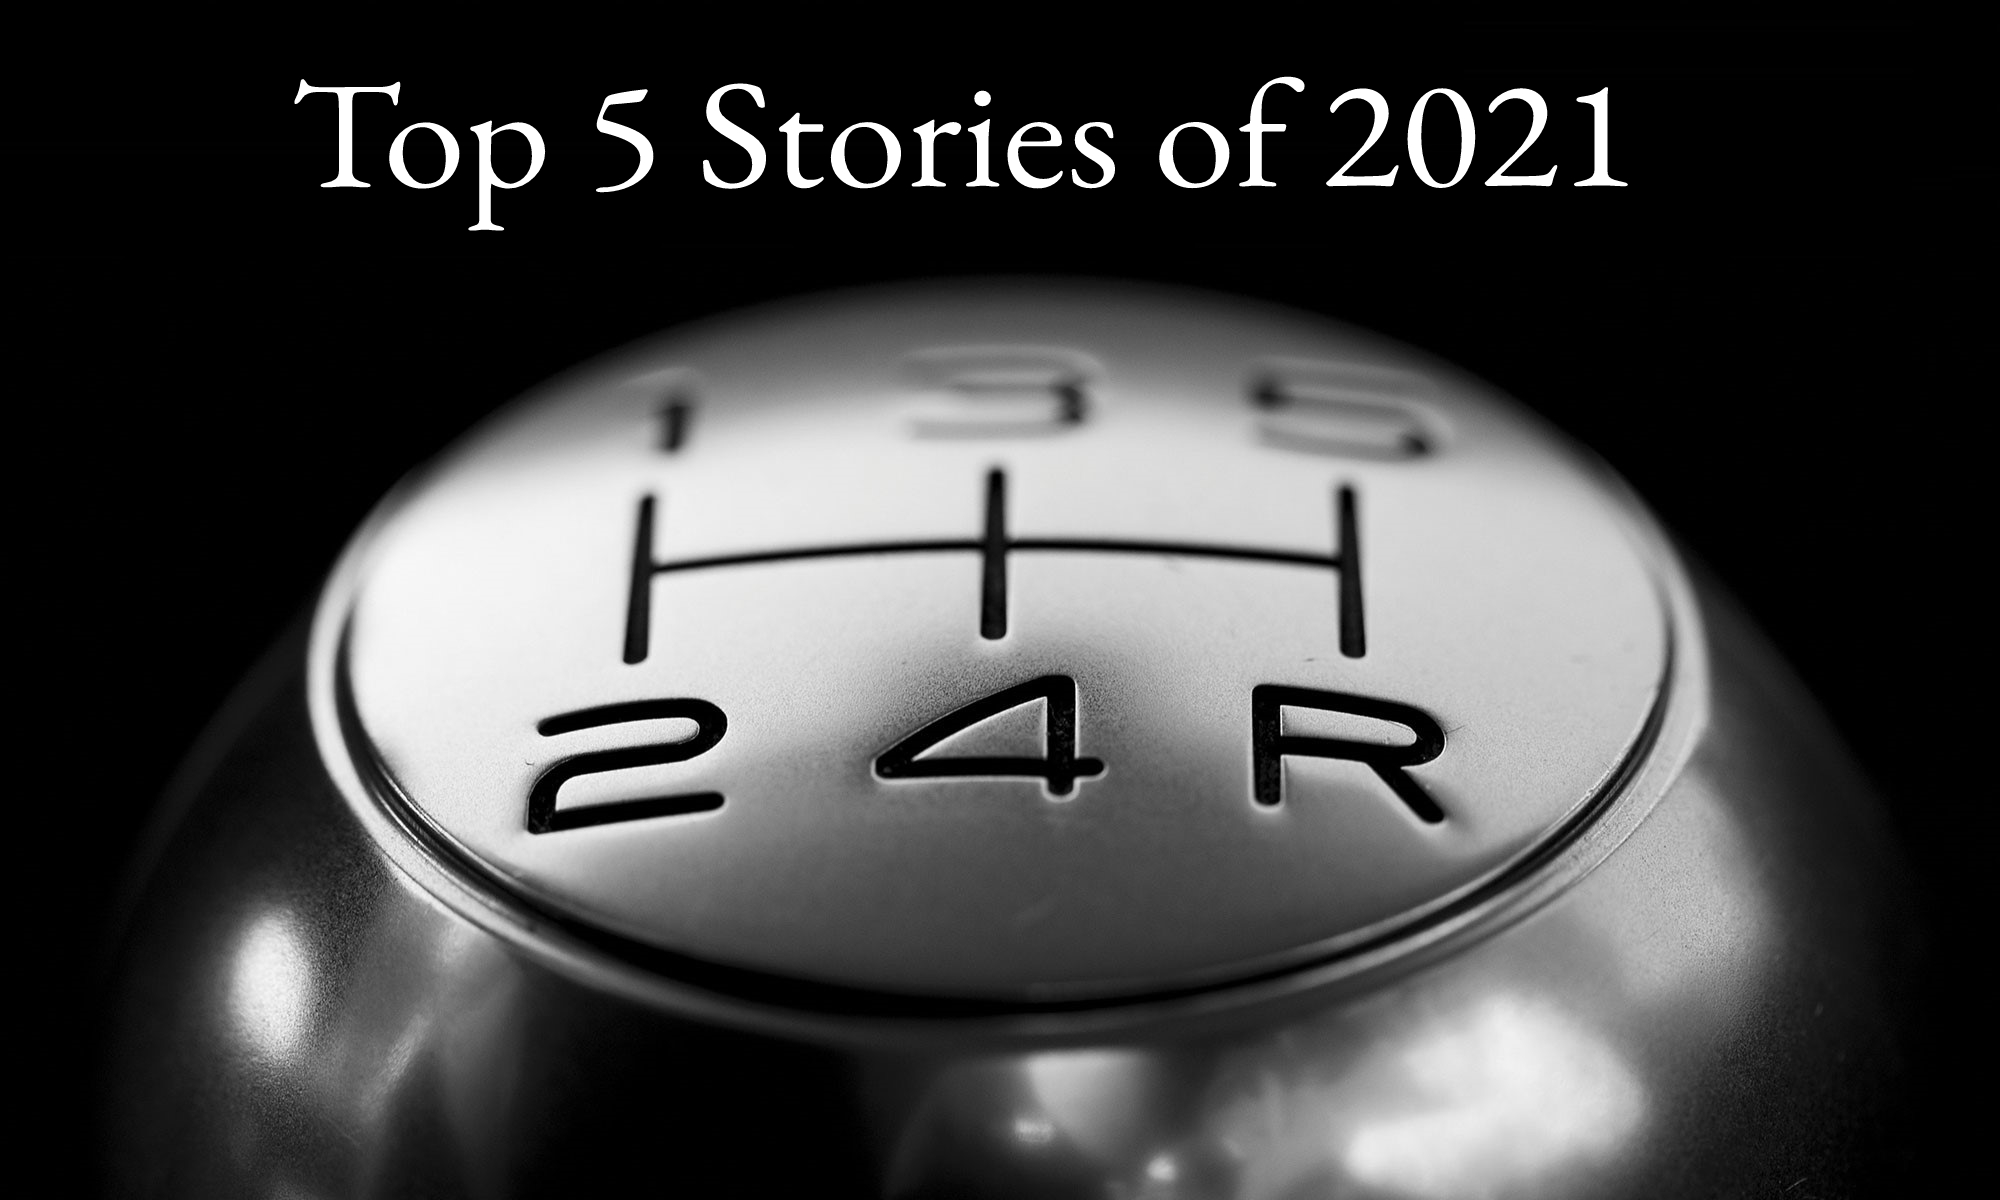 Top 5 stories of 2021